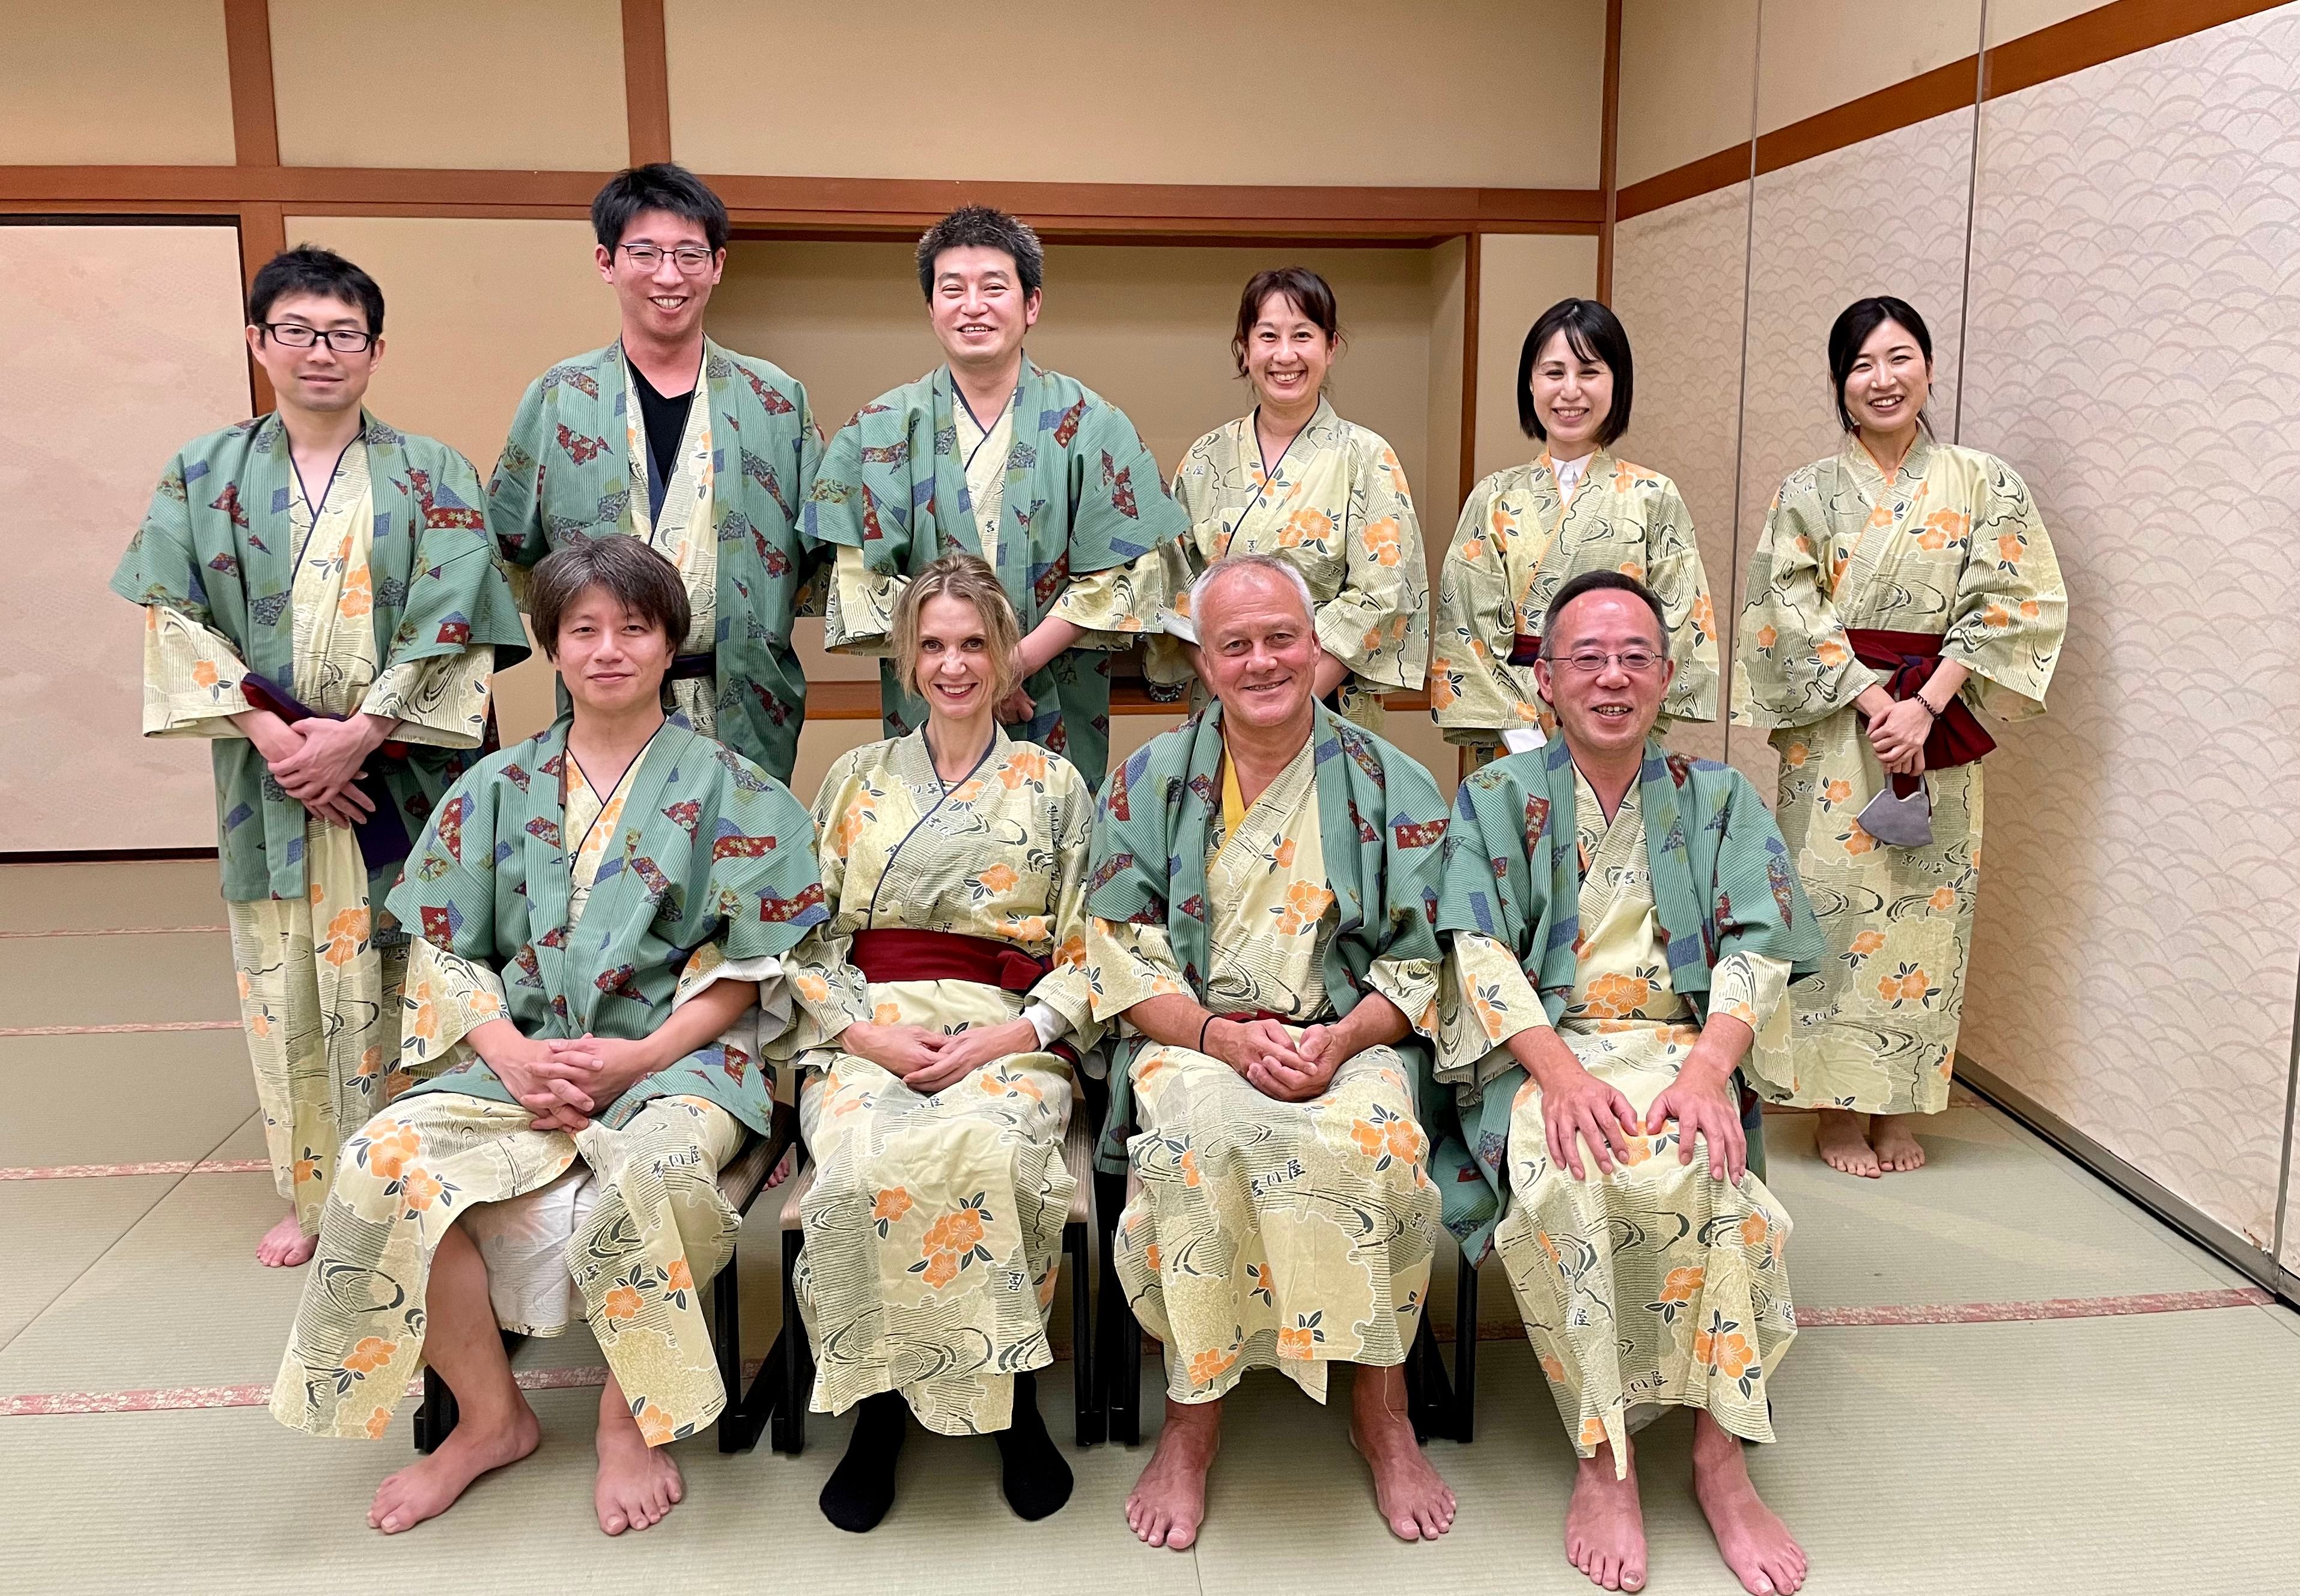 Das Bild zeigt das deutsch-japanische Team in Kimonos.